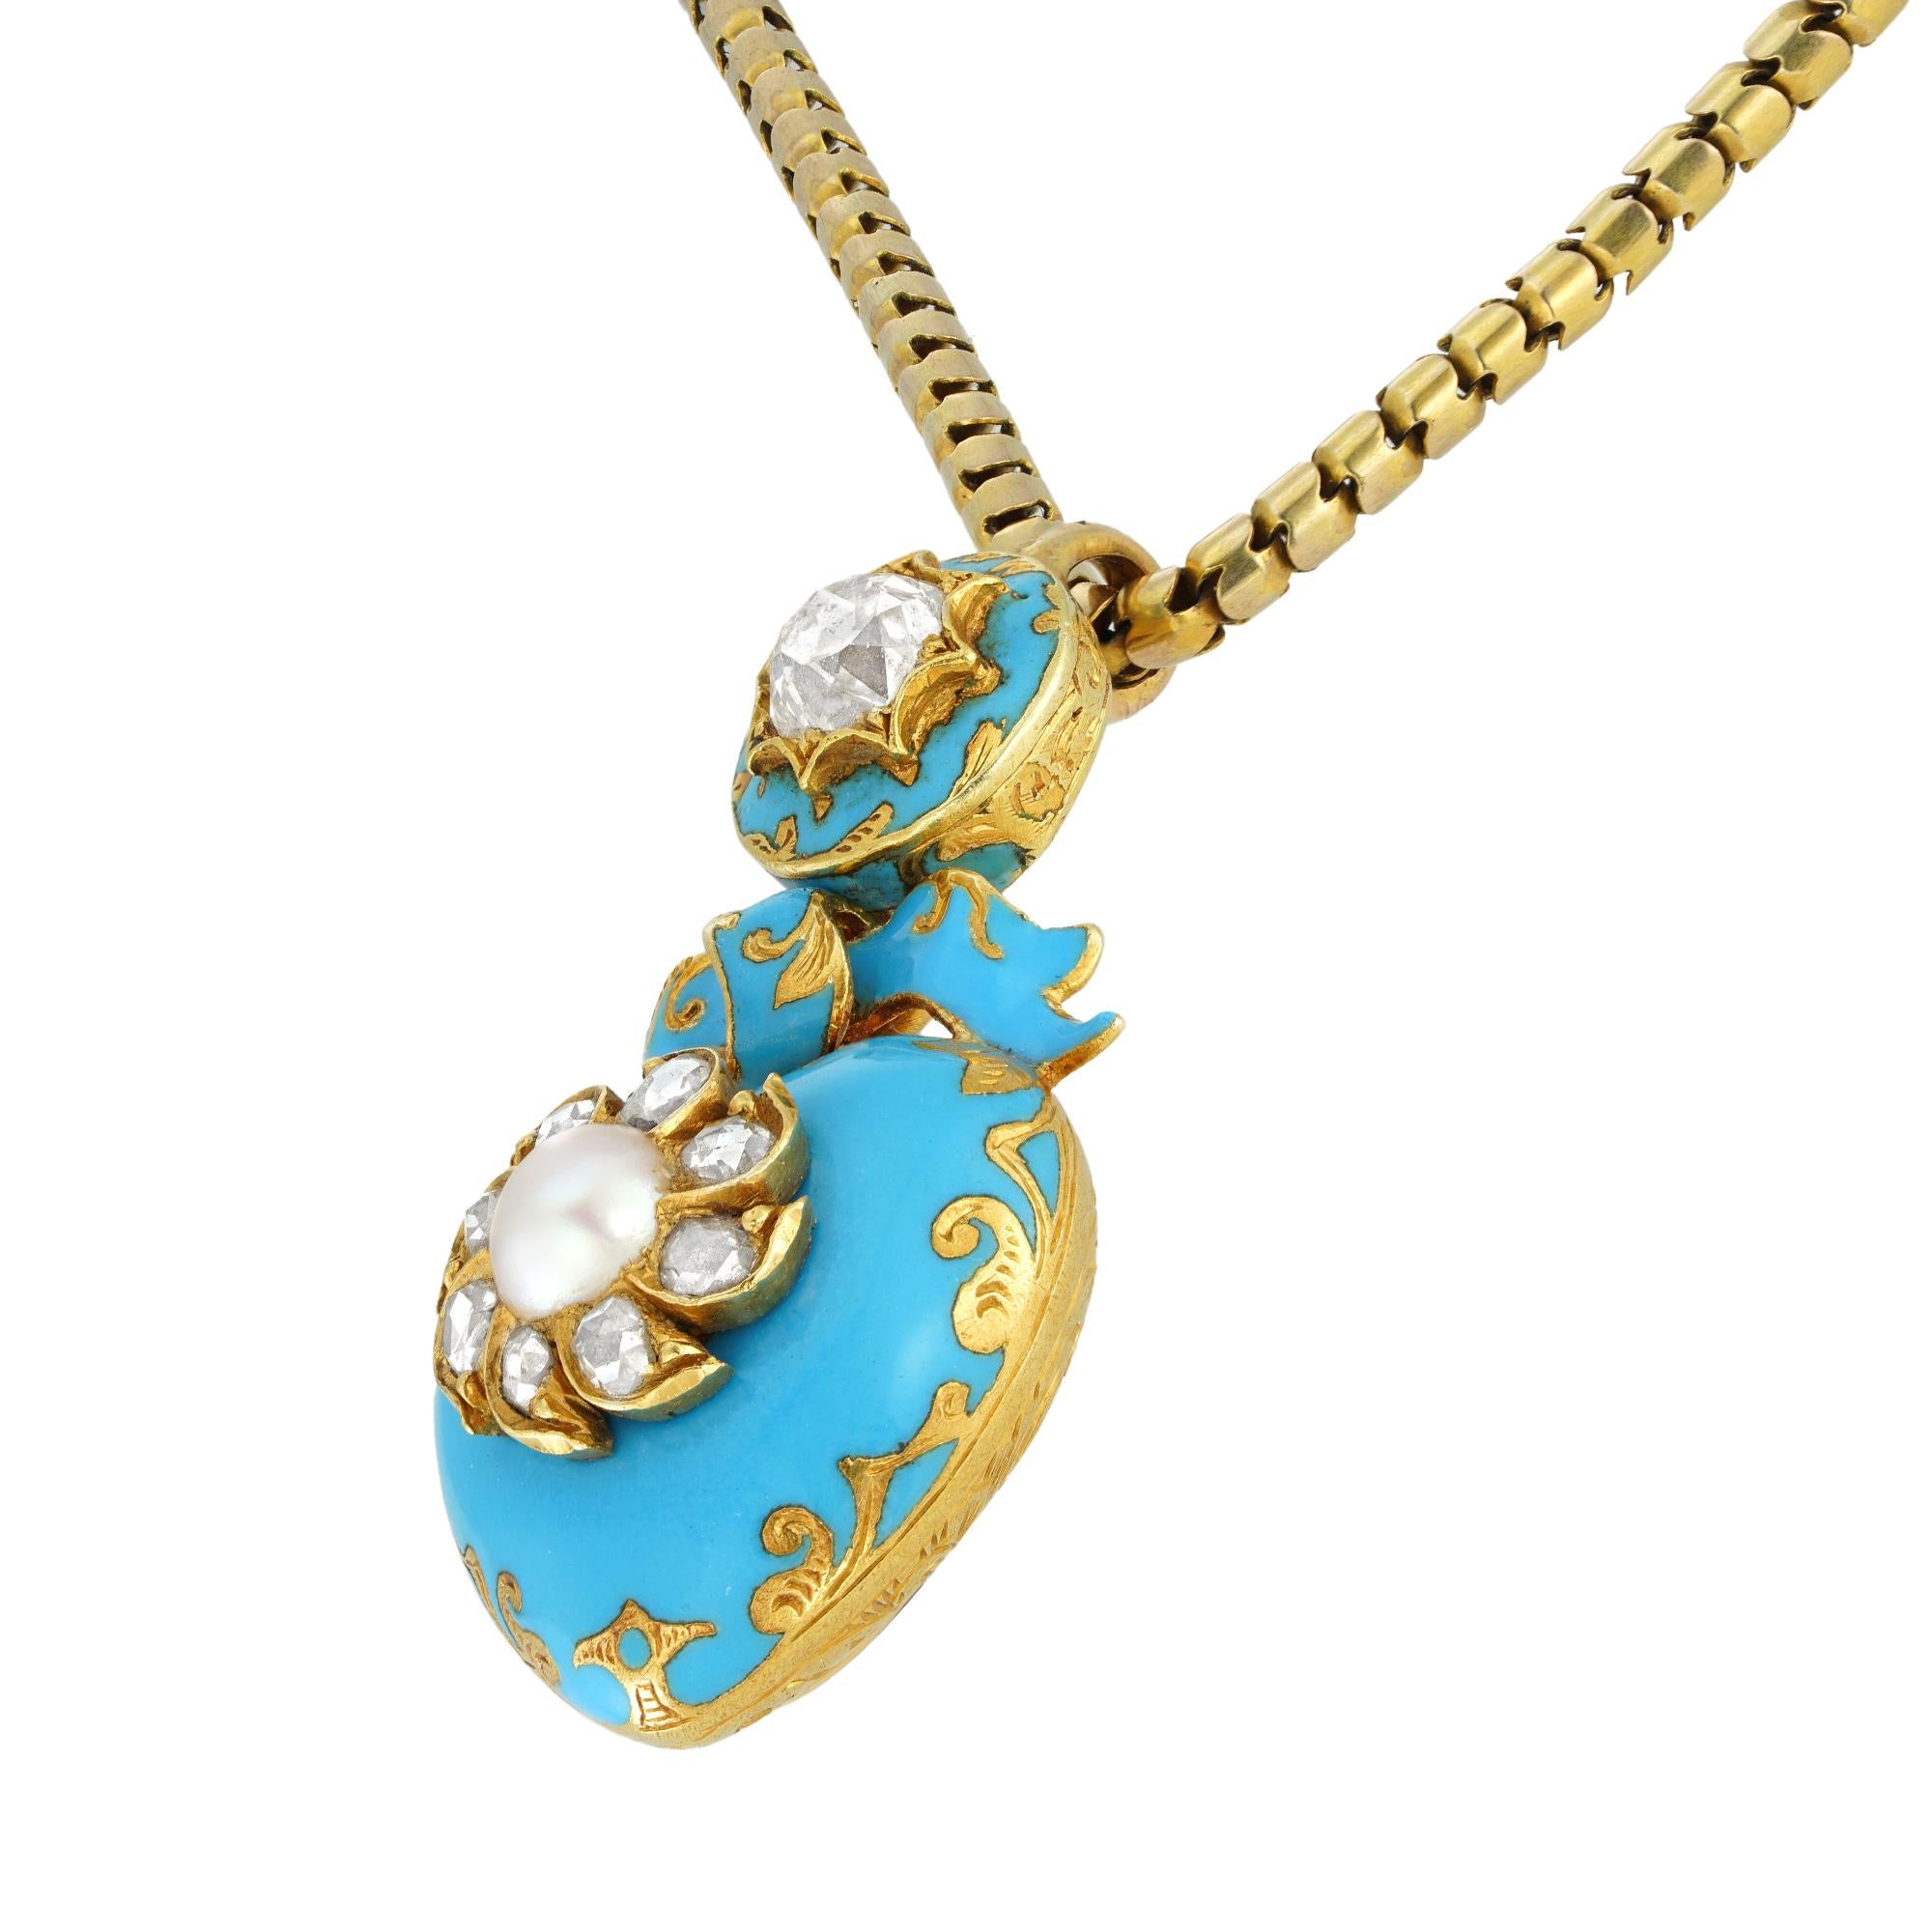 Ein viktorianischer herzförmiger Anhänger mit blauer Emaille, Perlen und Diamanten, das herzförmige Medaillon ist in der Mitte mit einer runden Perle besetzt, die von acht Diamanten im Rosenschliff auf hellblauem Emaillehintergrund umgeben ist,